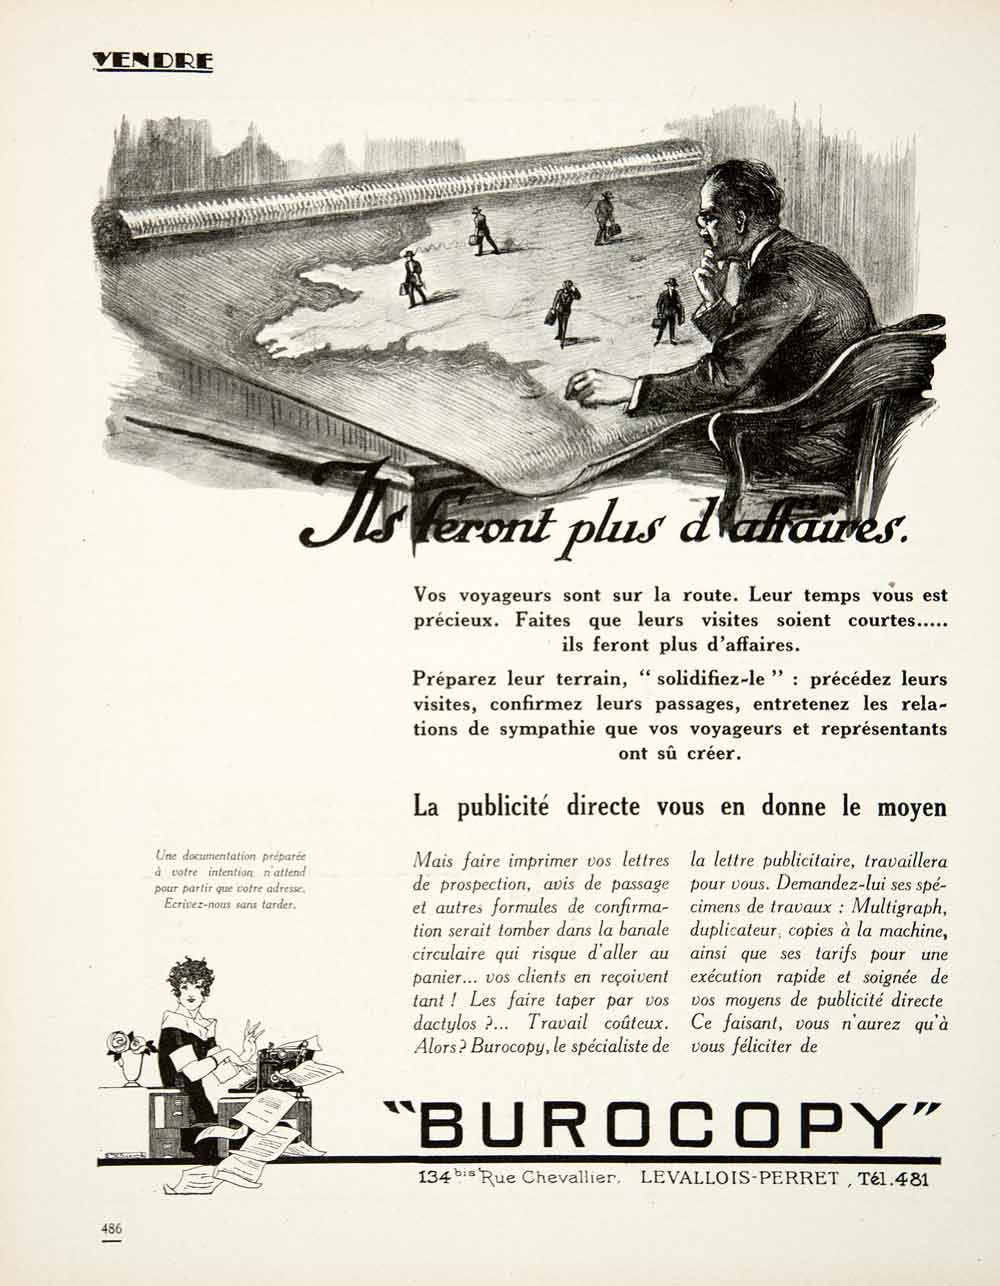 1925 Ad Burocopy 134 Rue Chevallier Levallois-Perret Publicity Campaign VEN4